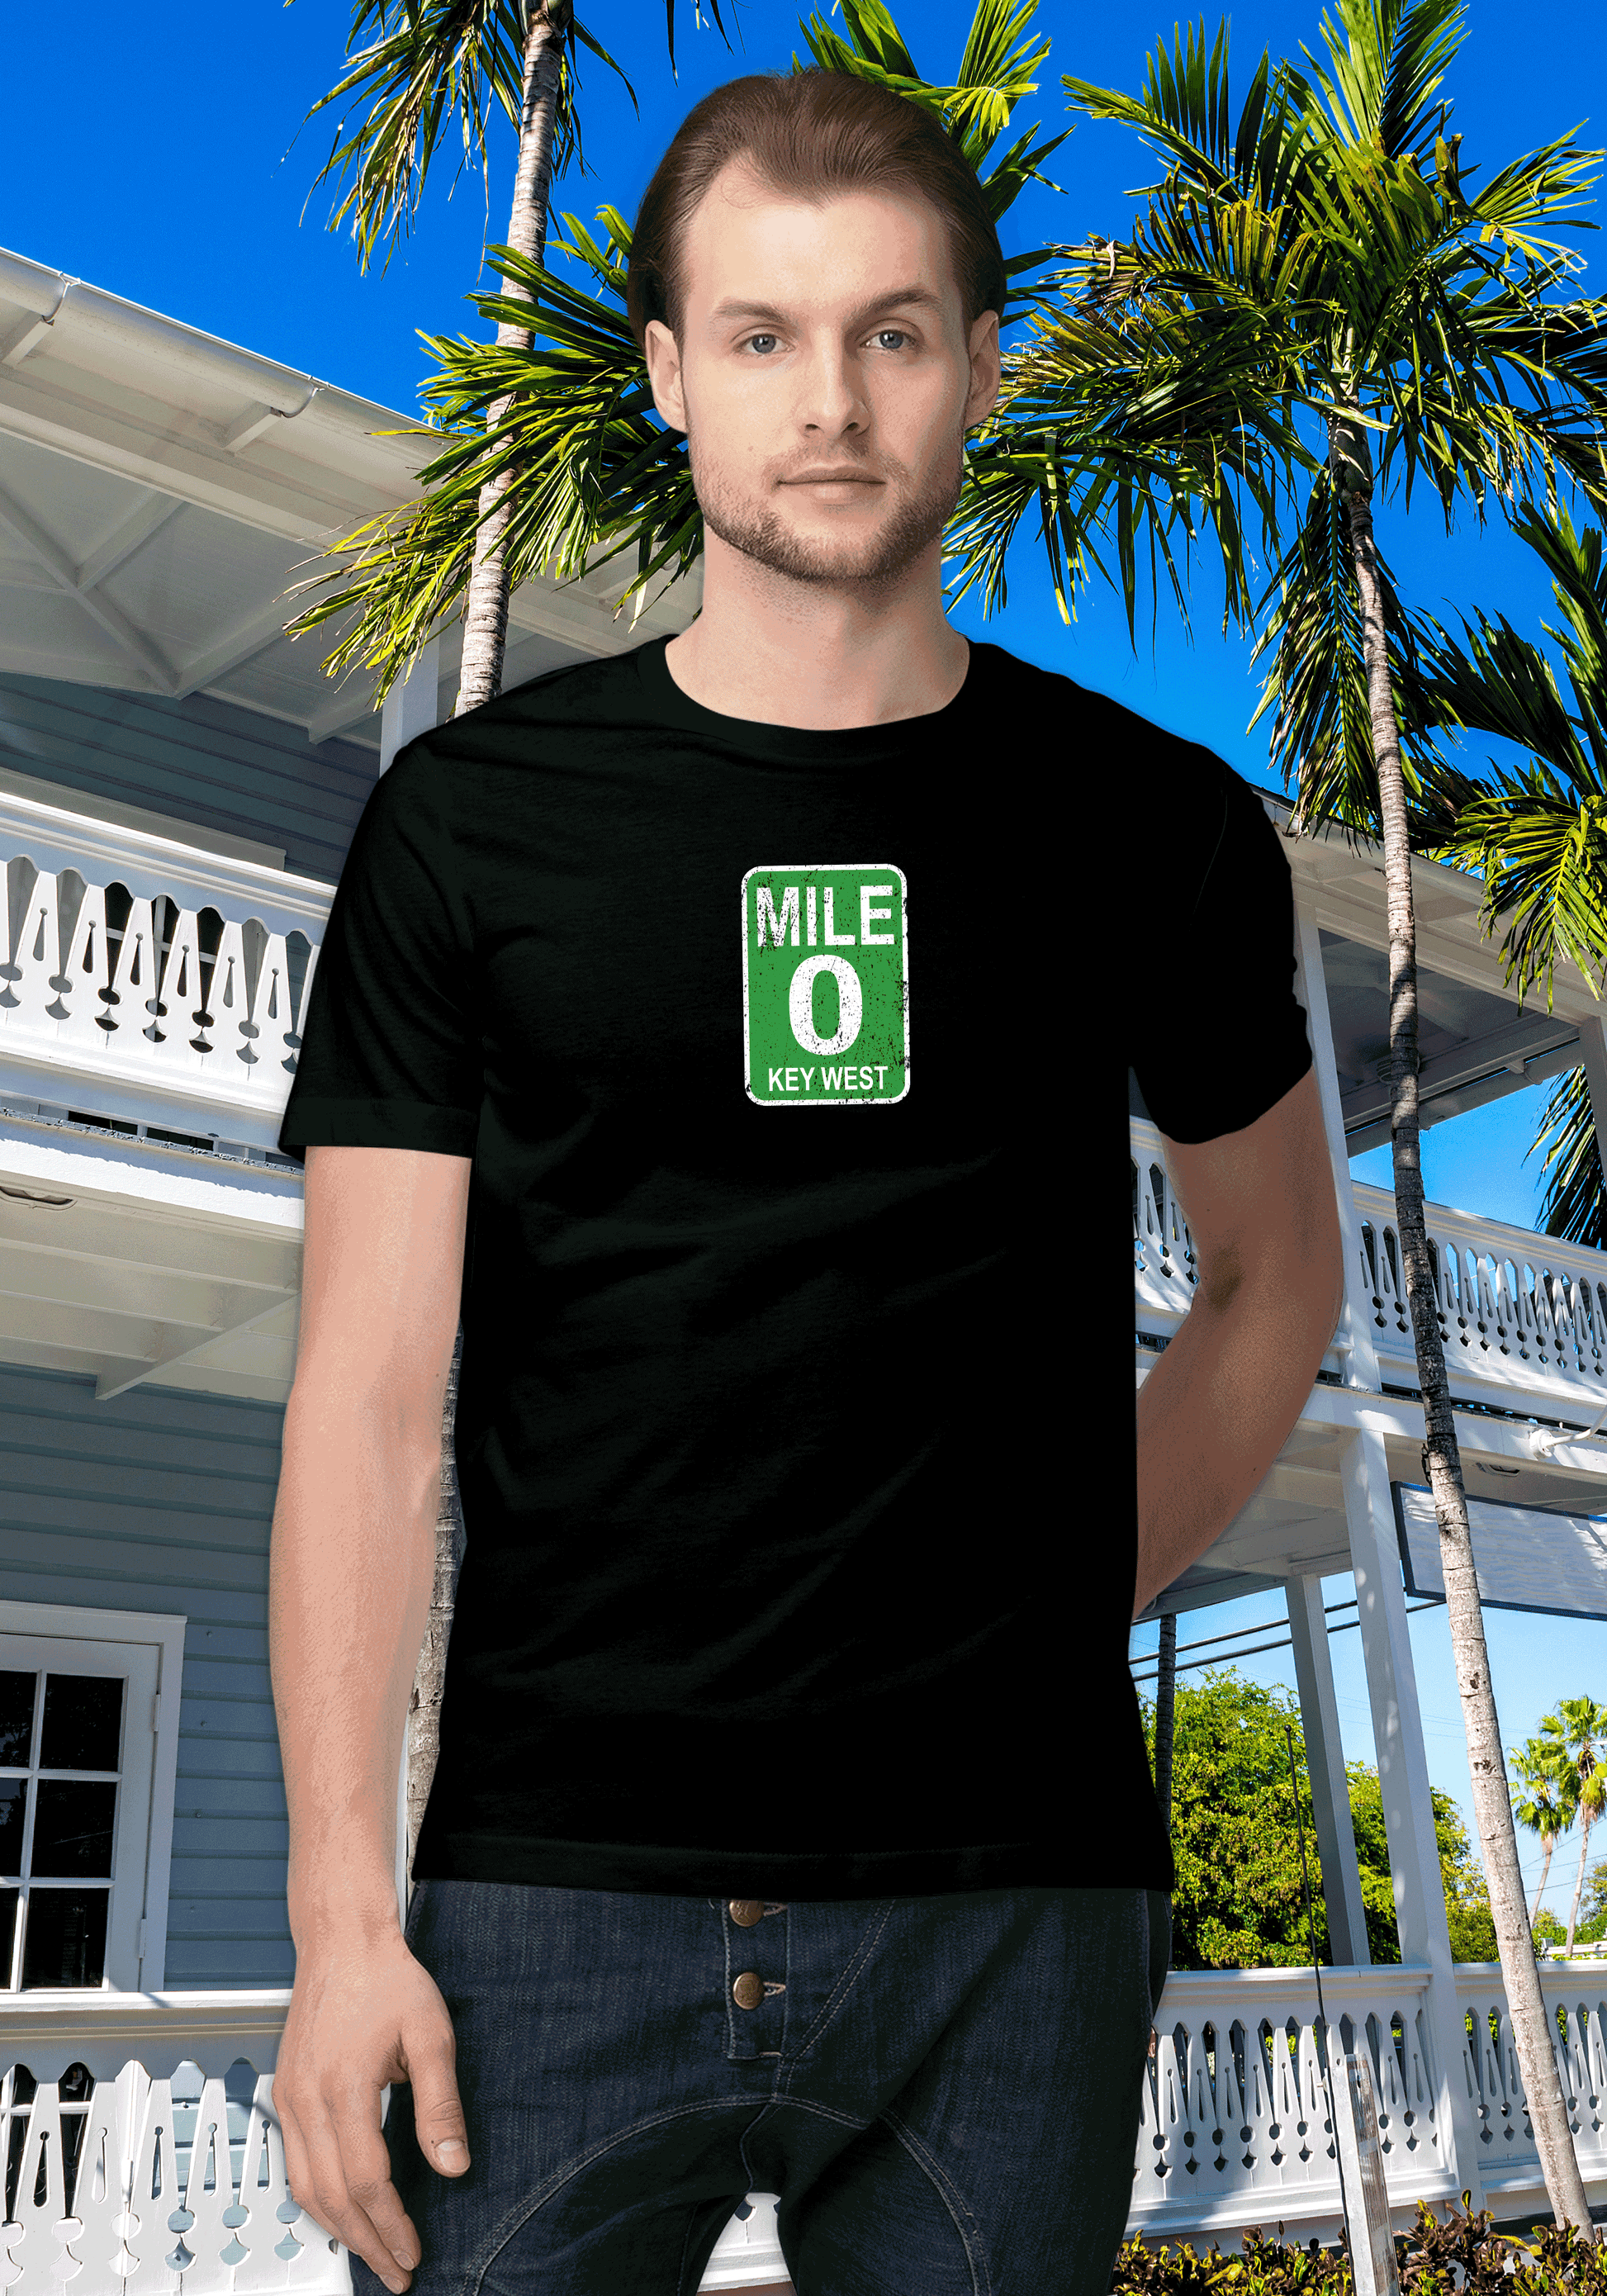 Key West Men's Mile 0 T-Shirt Souvenir Gift - My Destination Location